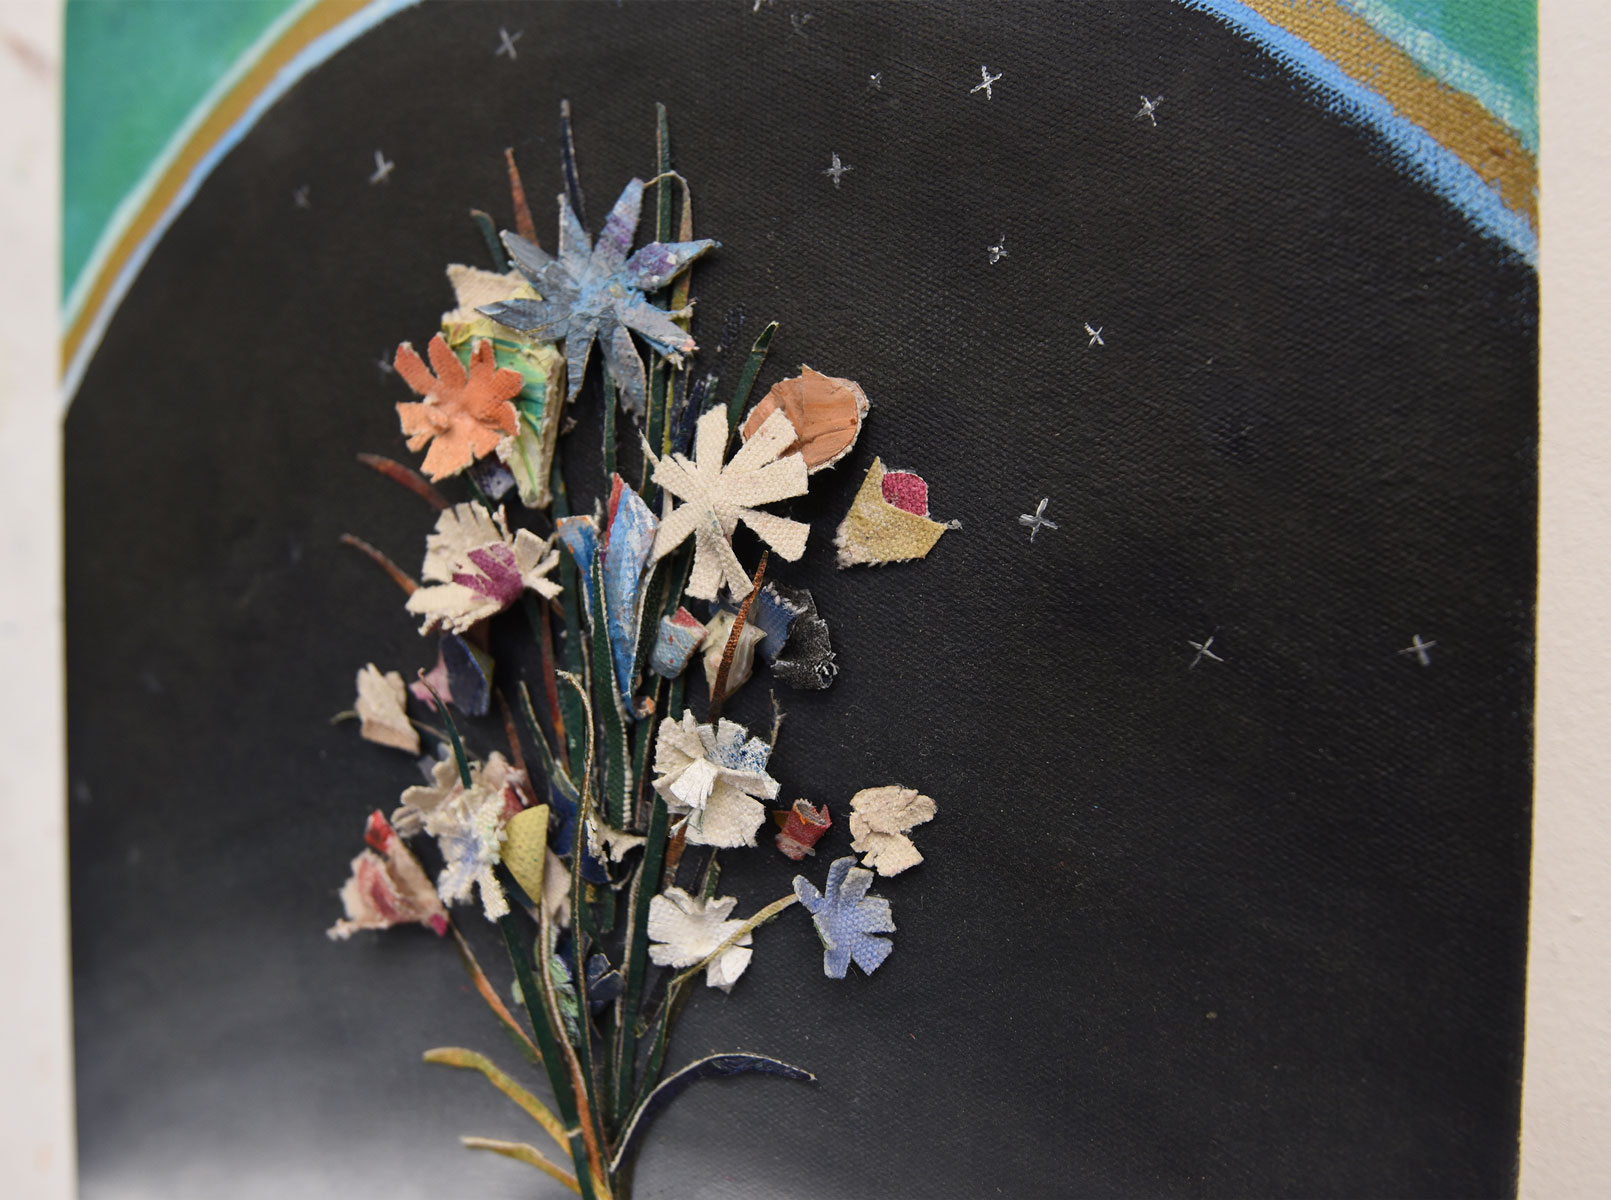 Space-Flowers_detail1_patrick-simkins_artist_collage_oil-paint_Paris_2021